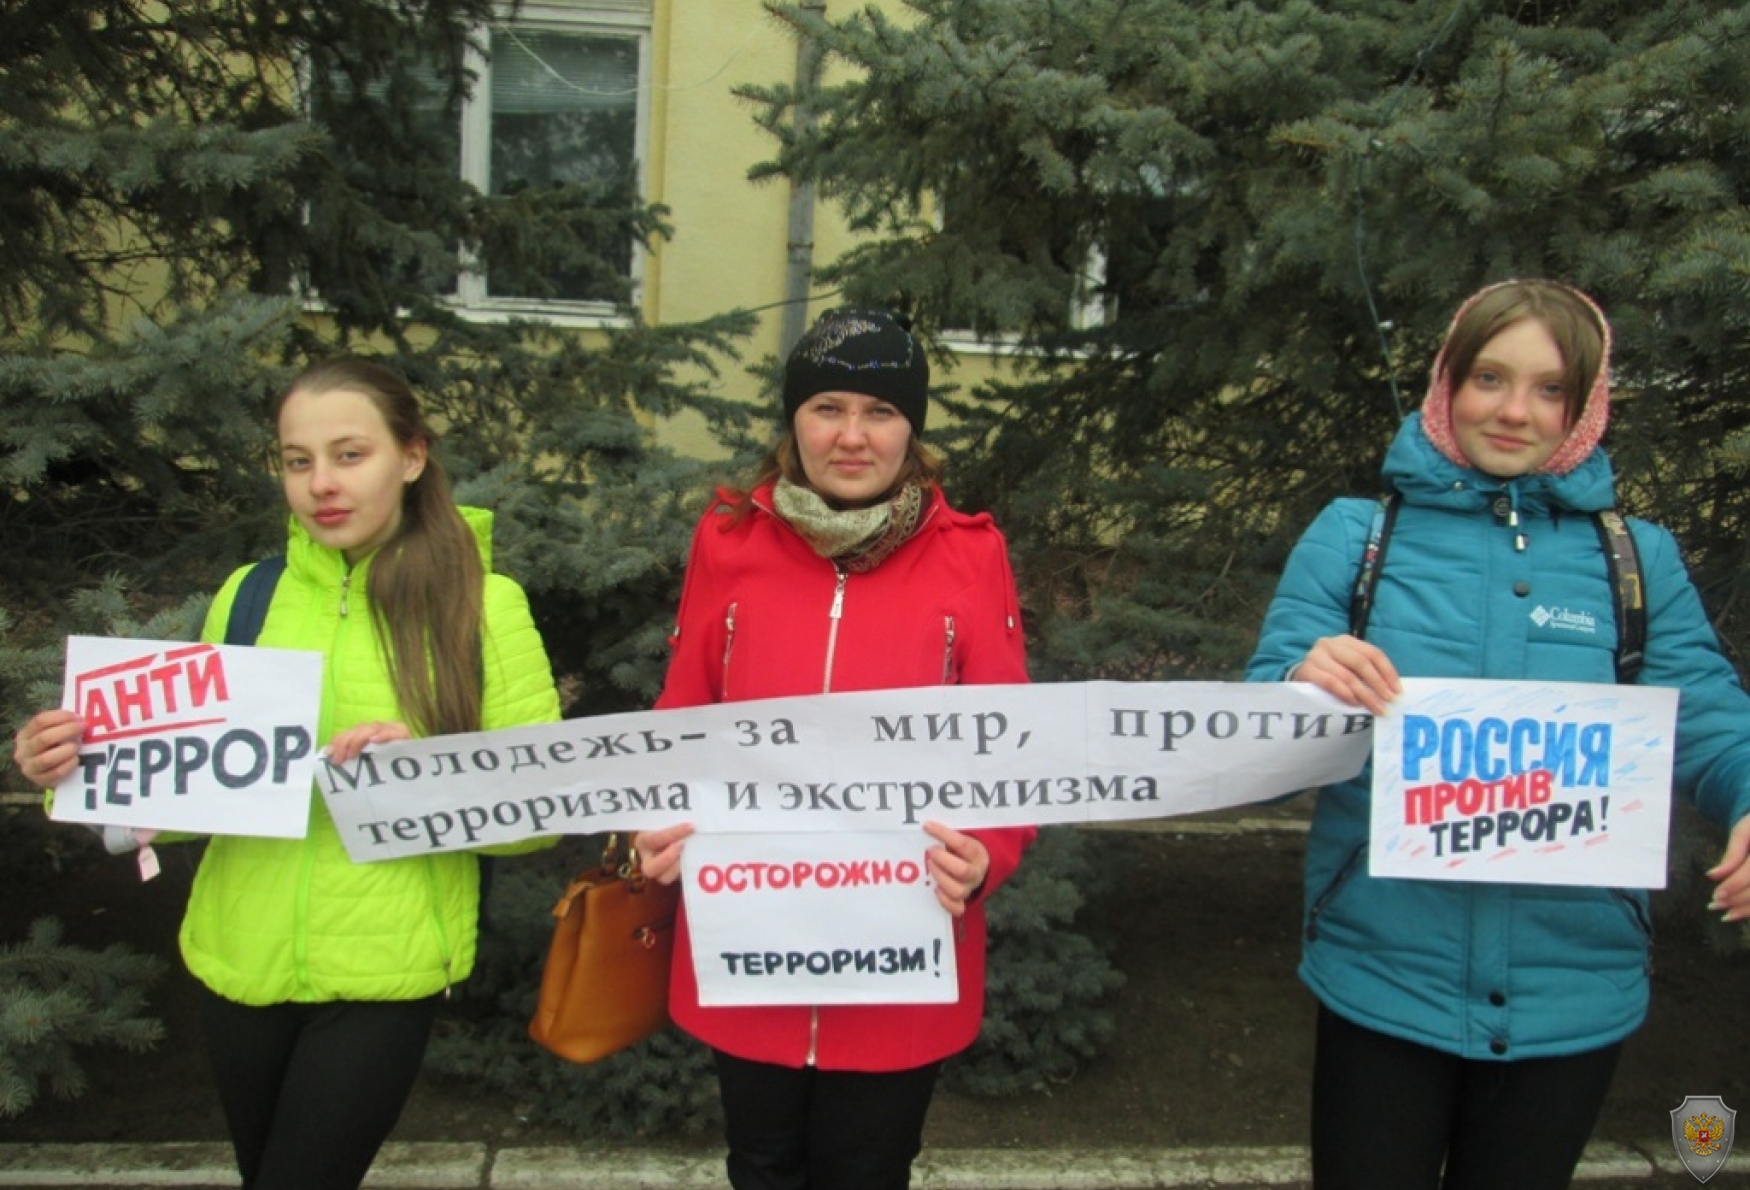 Флешмоб «Молодежь за мир», прошедший на центральных улицах г. Новоузенска.